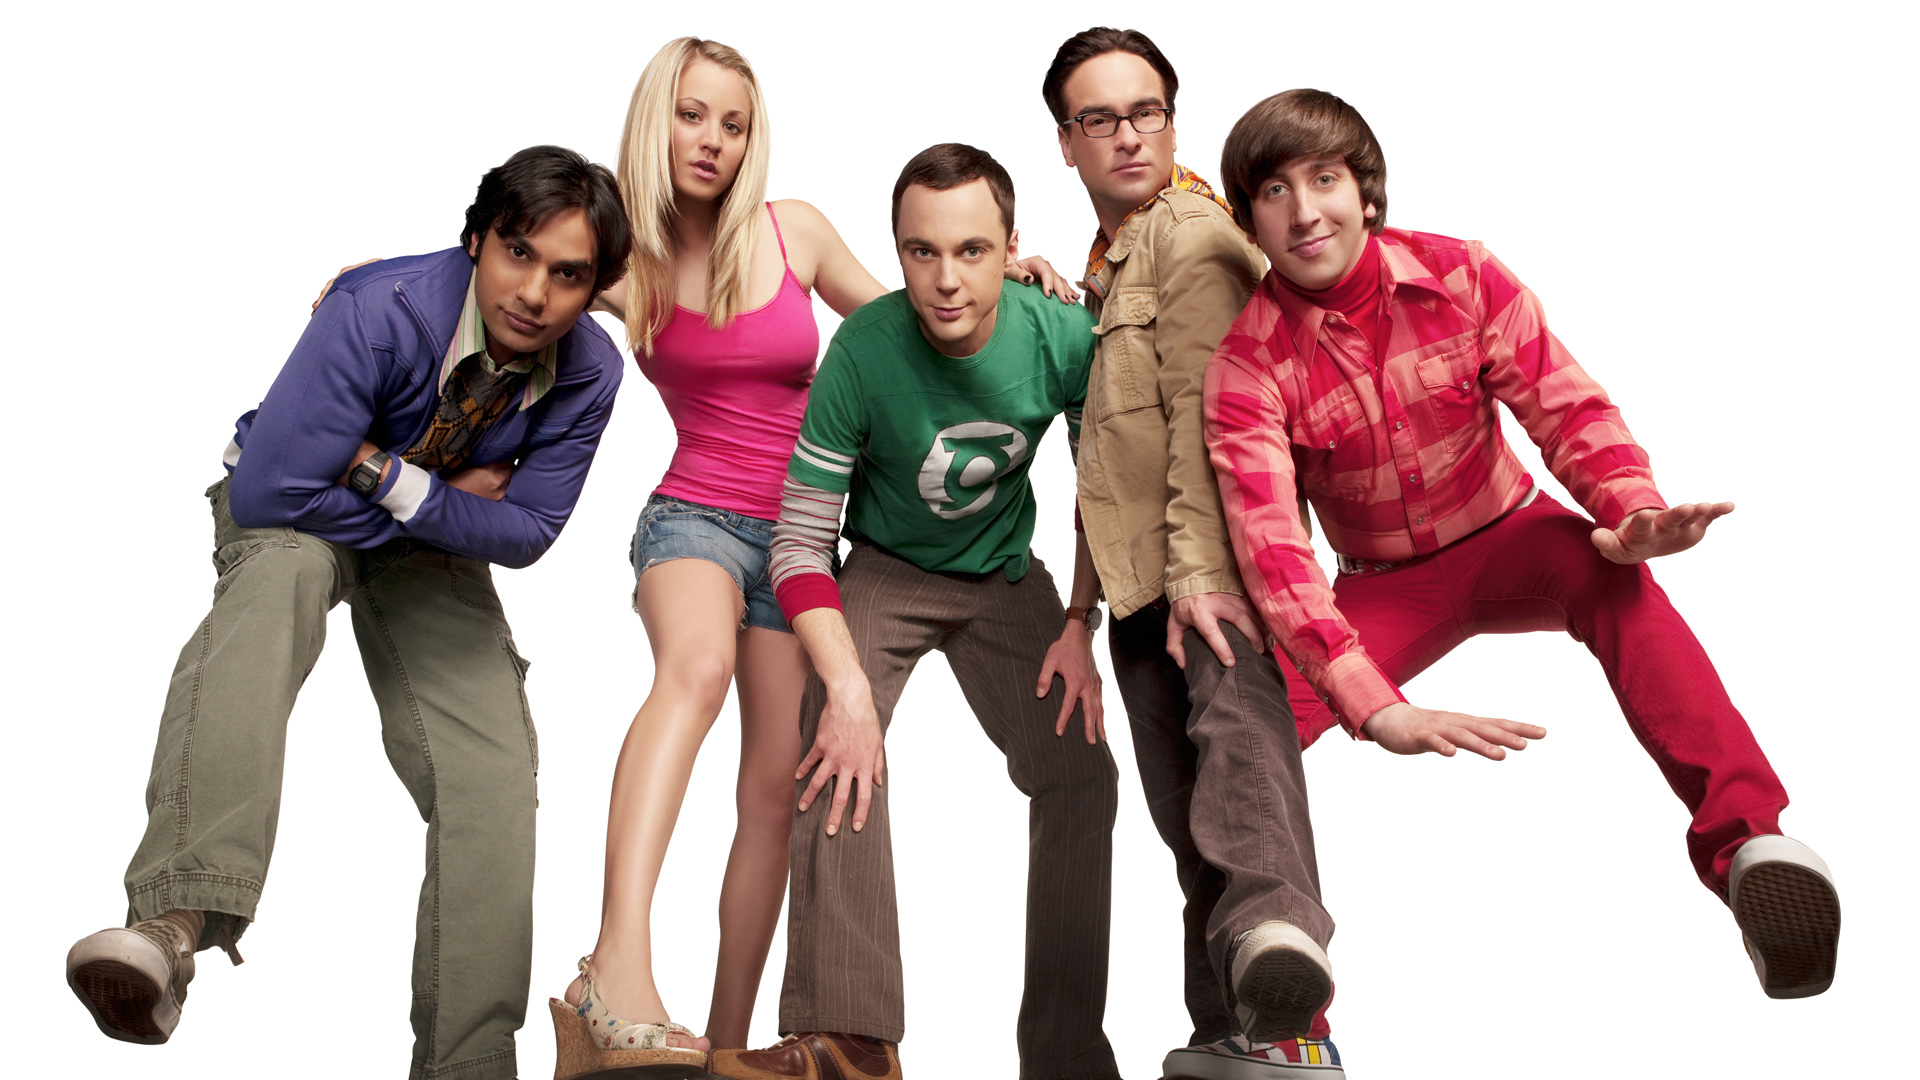 Free Download The Big Bang Theory Full Hd Wallpaper Full Hd Wallpapers Download [1920x1080] For